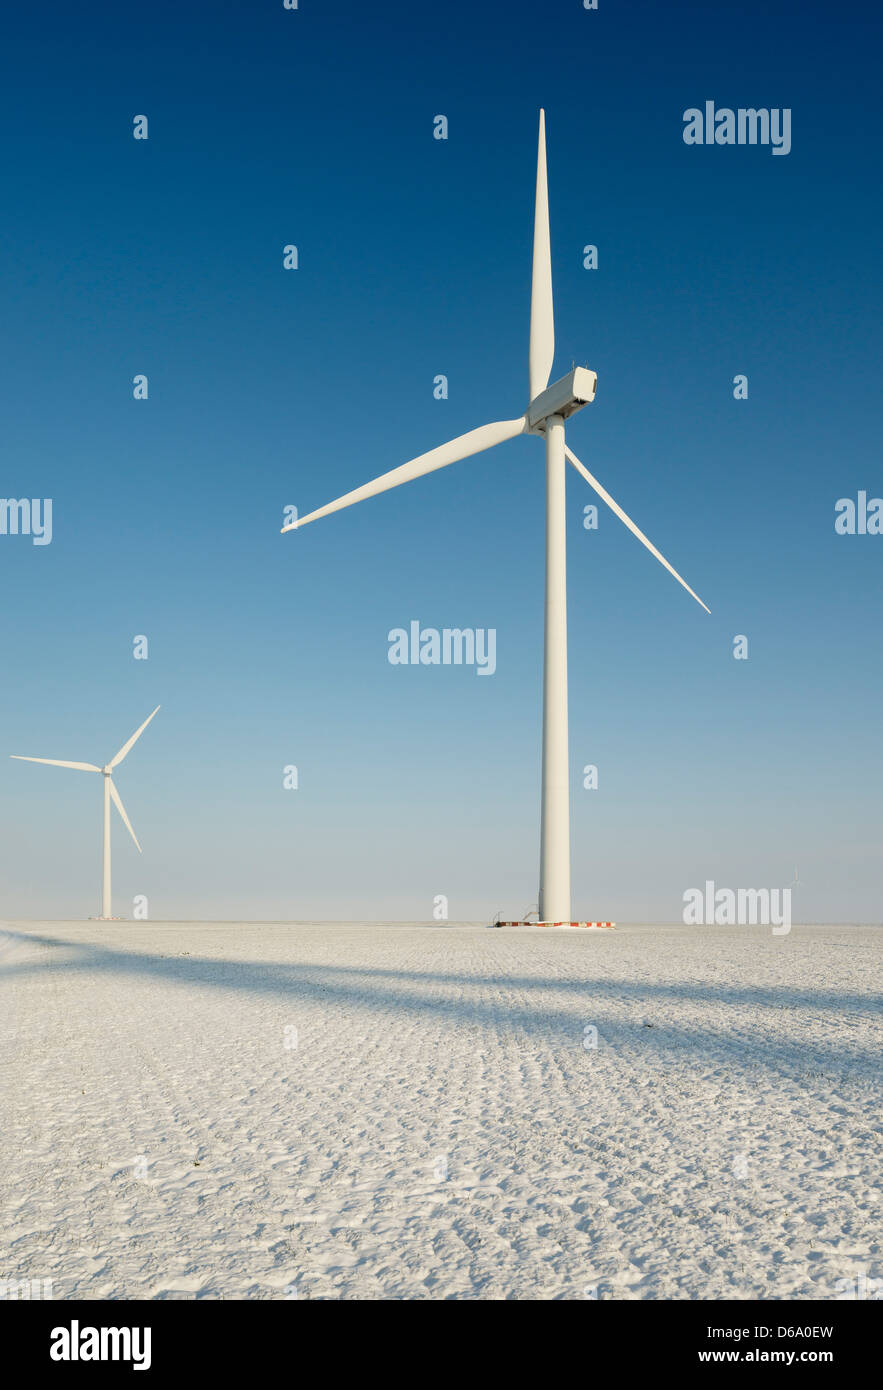 Wind turbines in snowy landscape Stock Photo